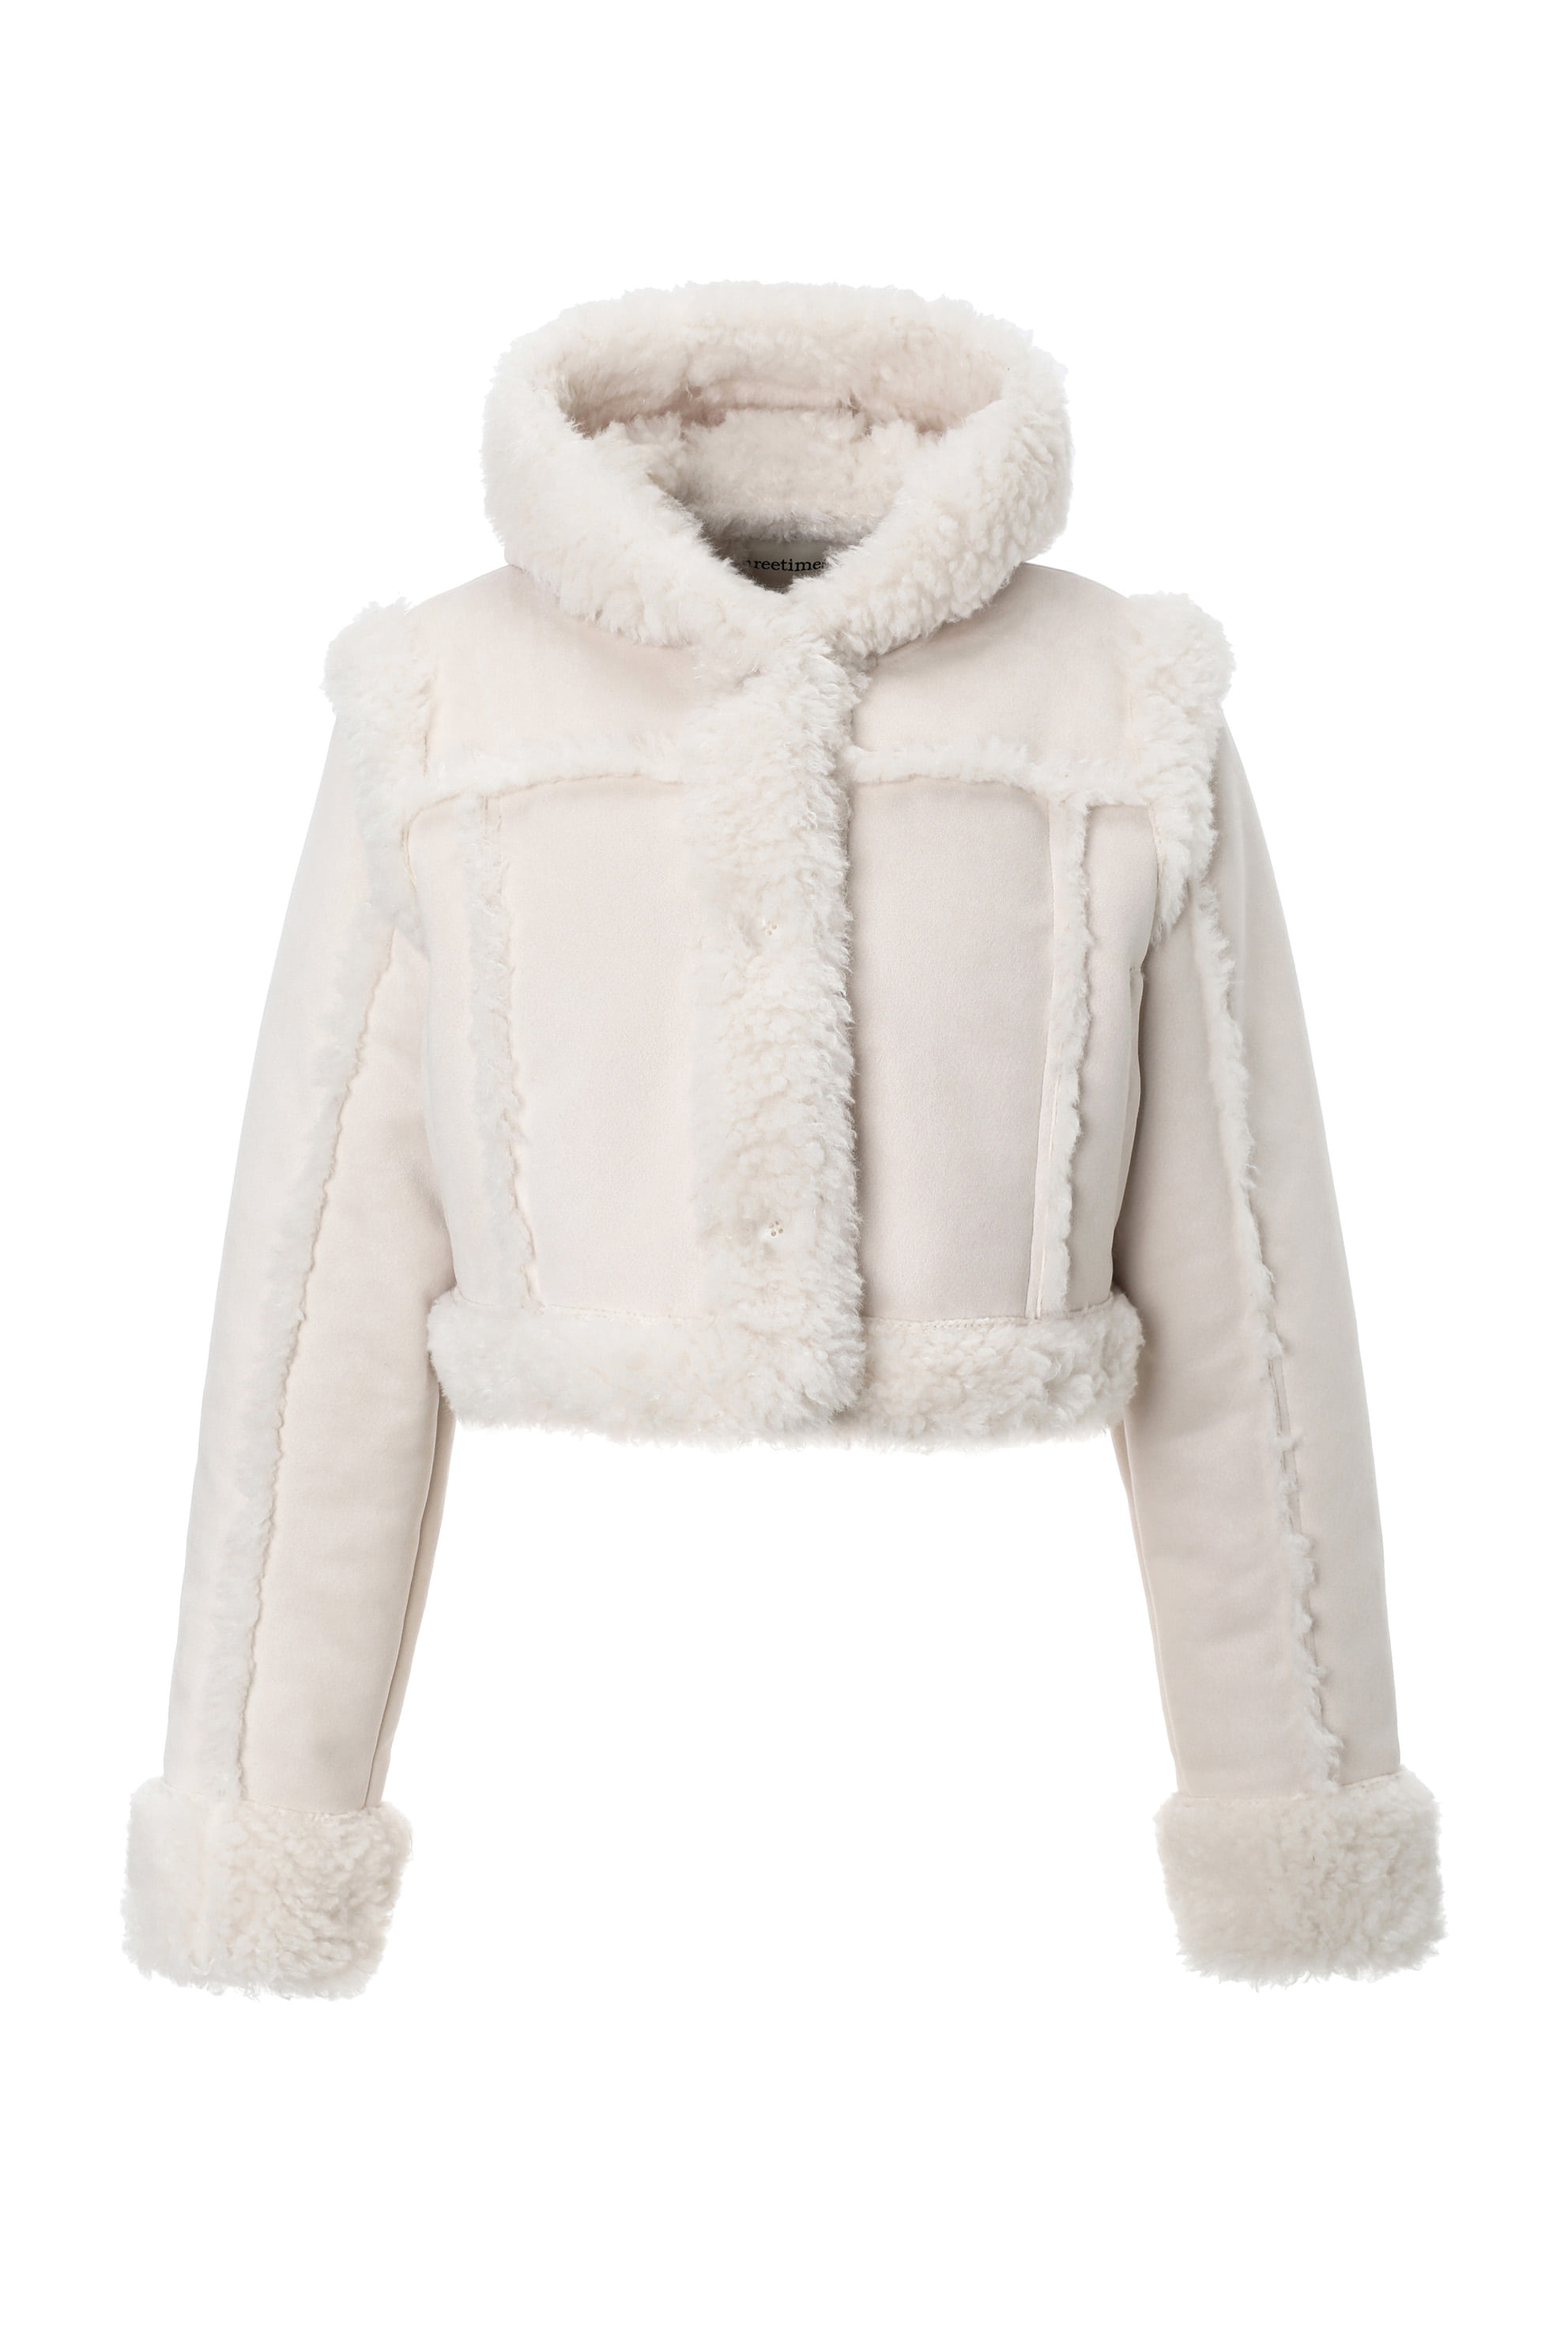 [3rd pre-order] Baby hoodie fur coat